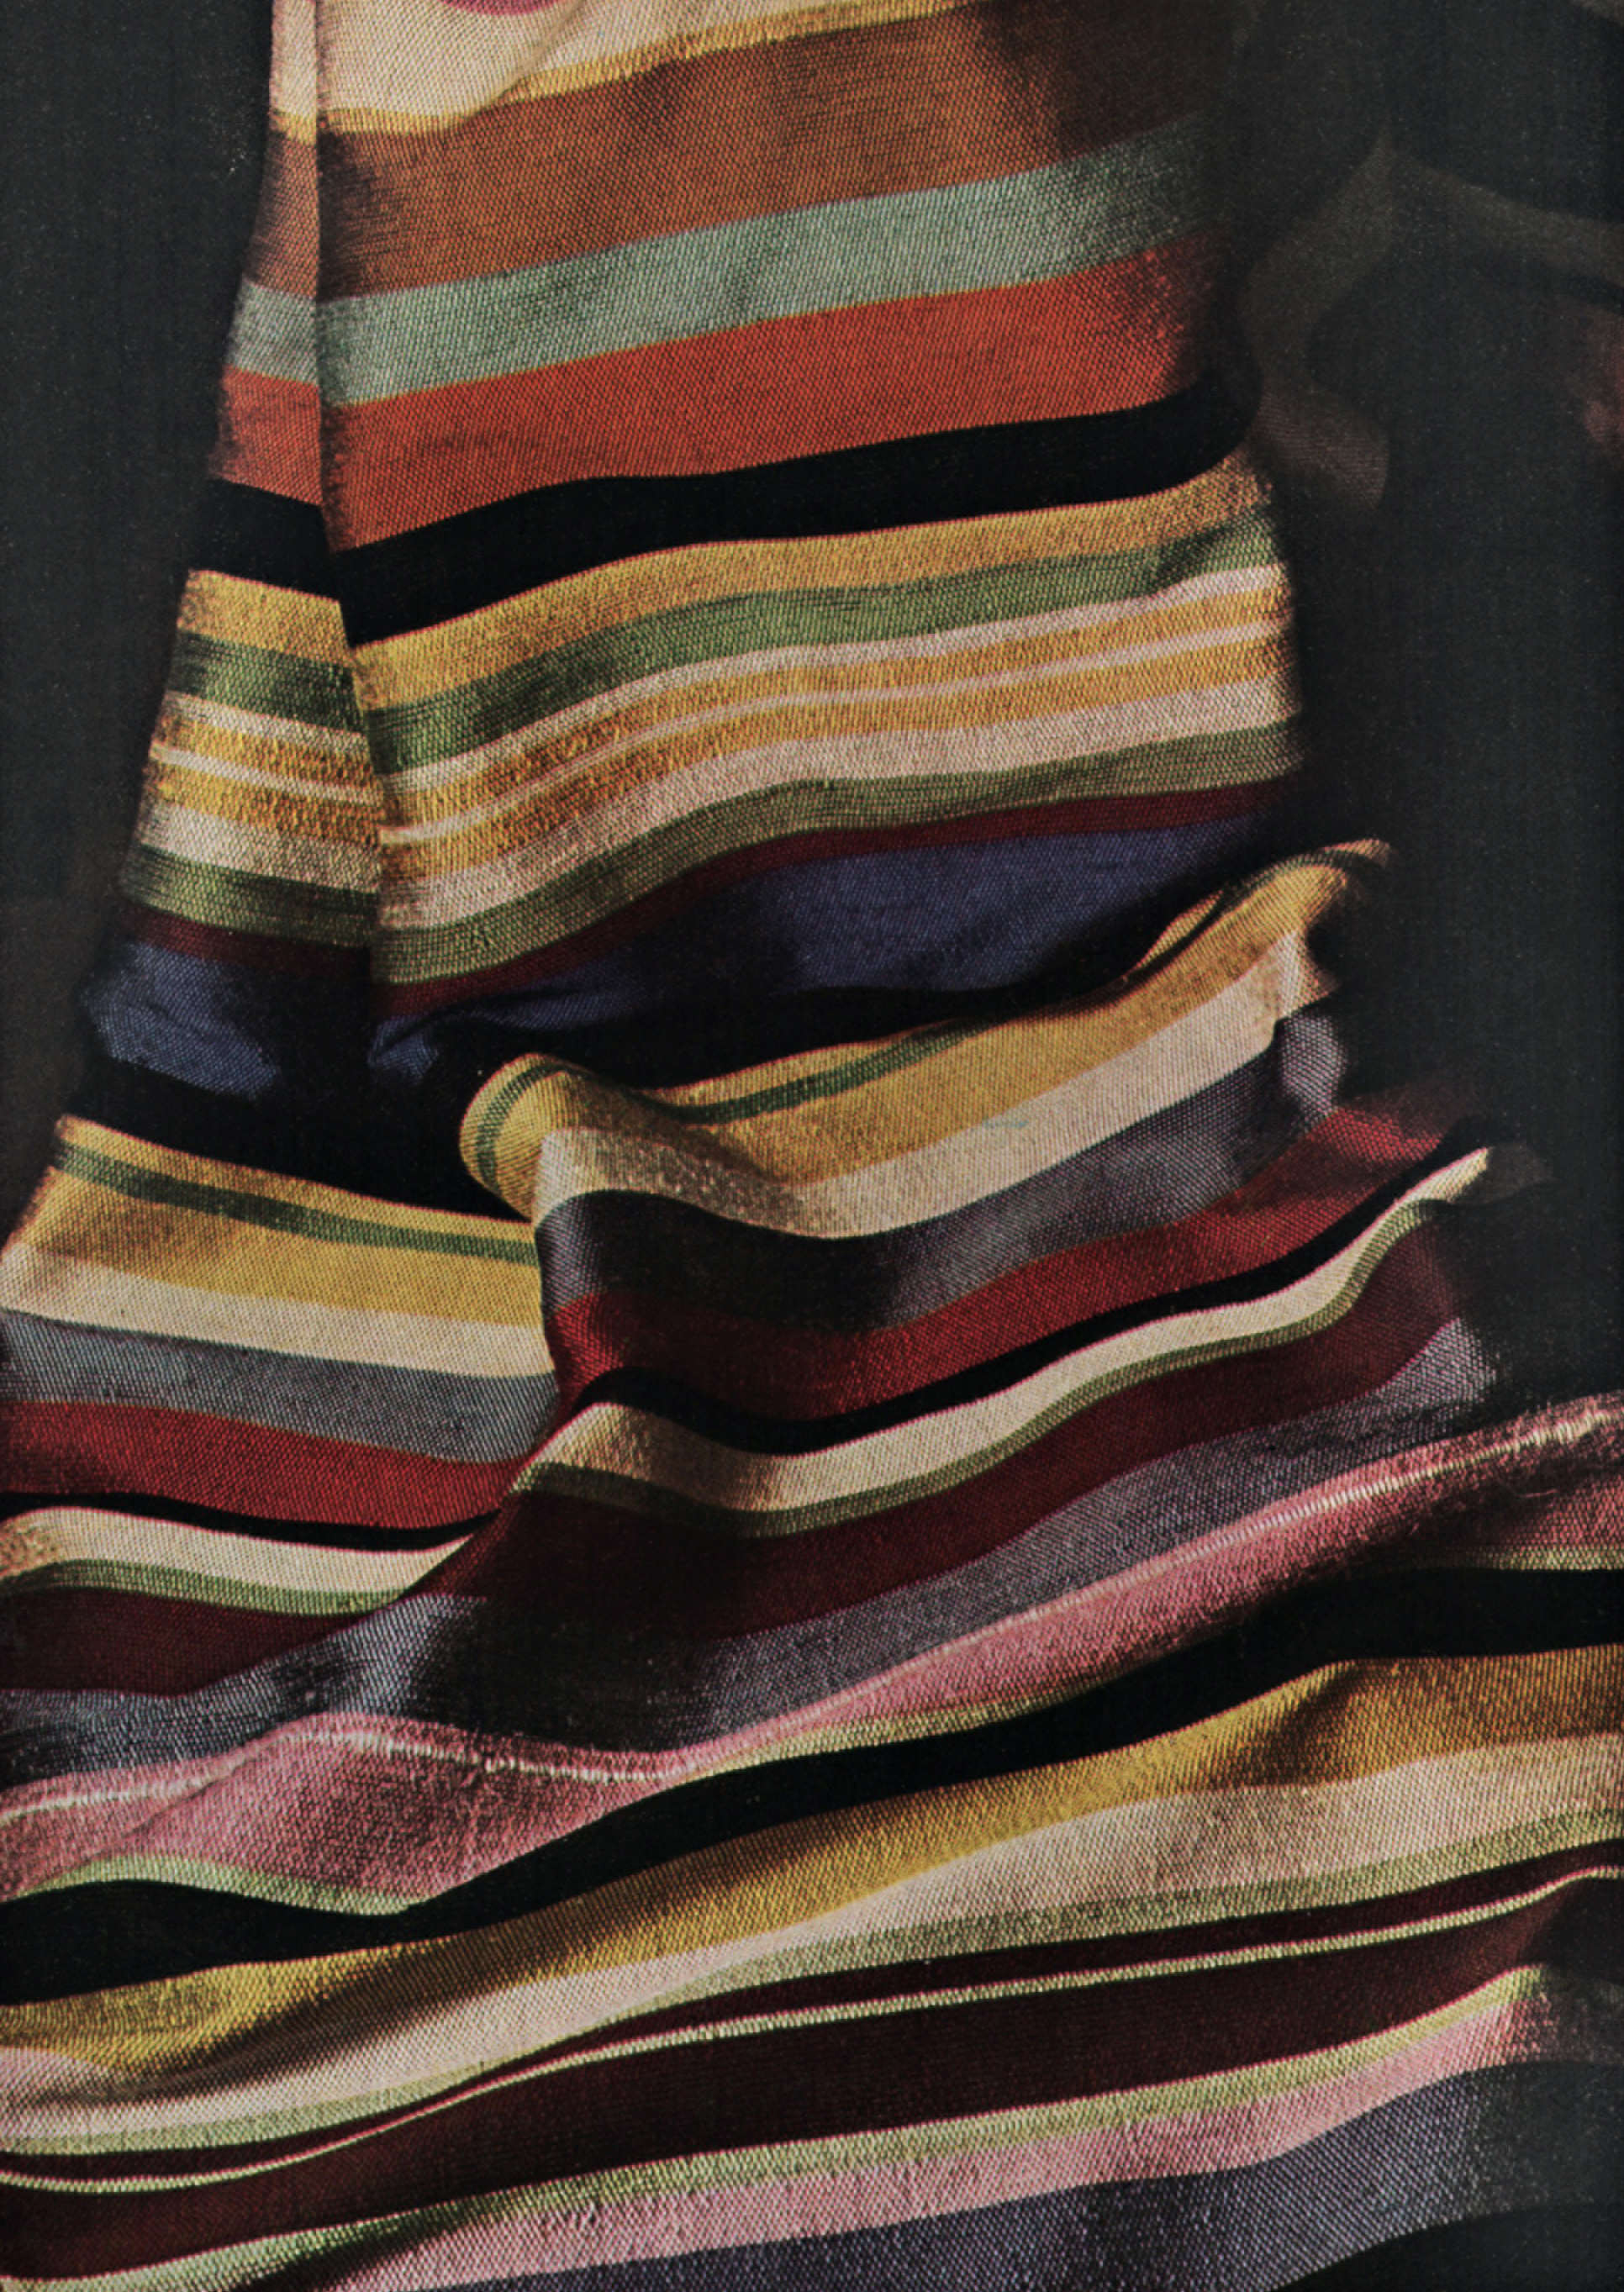 Gegia Bronzini. Striped Fabric 1964. Picture credit: Archivo Privato Gegia Bronzini 